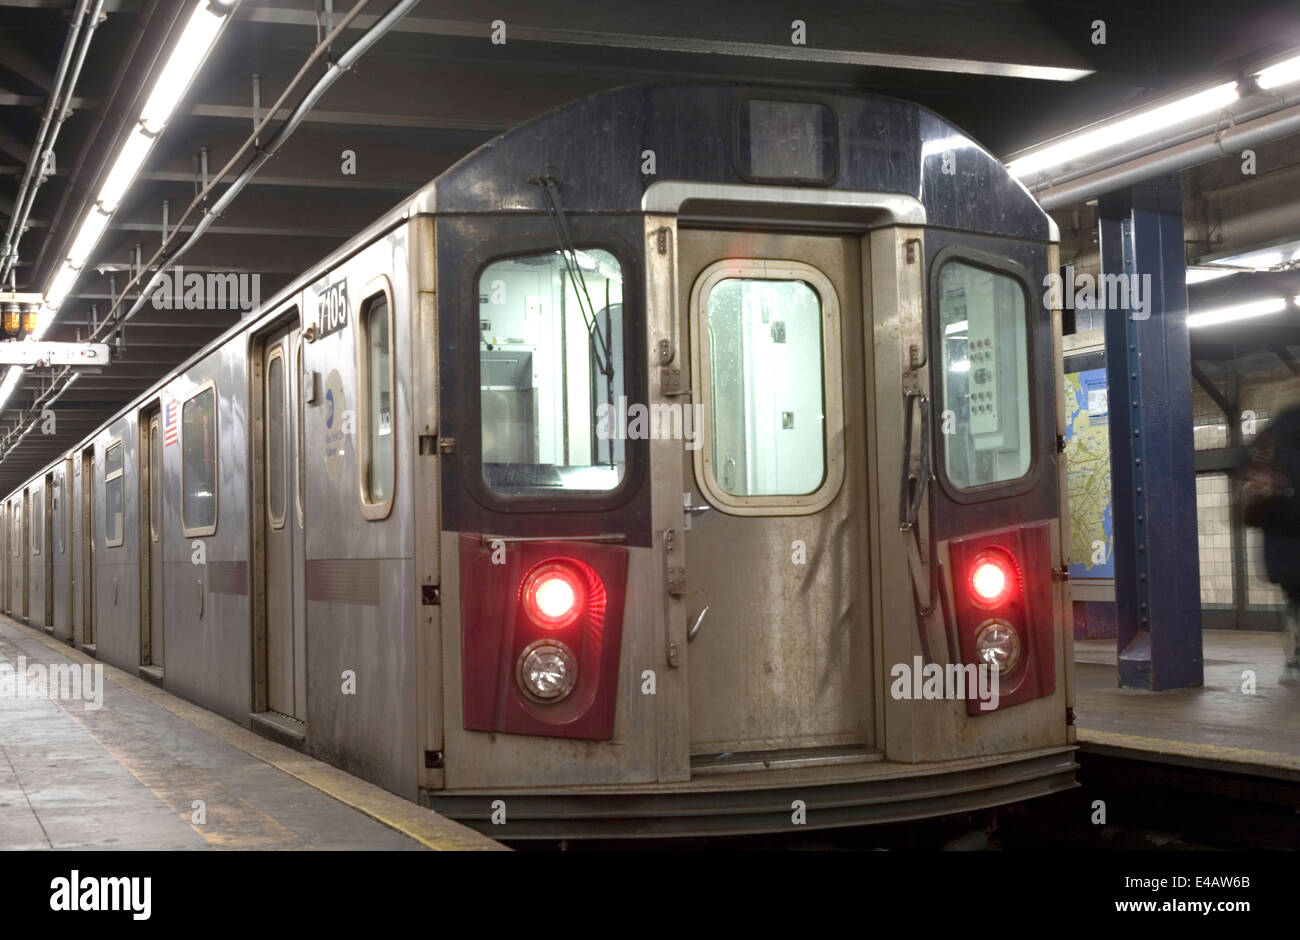 NEW YORK, NEW YORK - 29 DÉCEMBRE : Subway train stationné en gare. Prises le 29 décembre 2010, dans la ville de New York. Banque D'Images